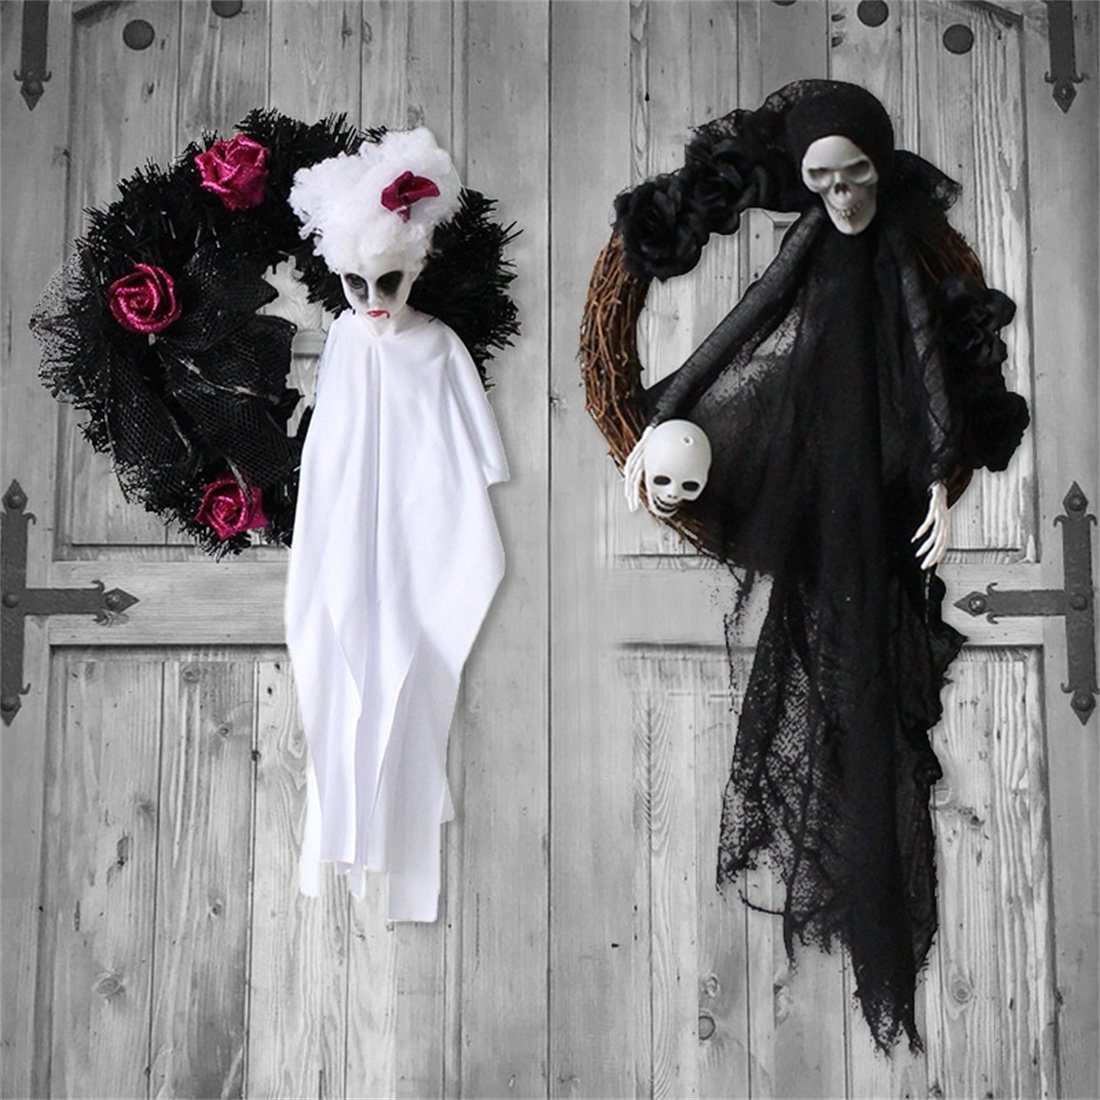 Girlandenanhänger, und Schwarzer Kunstgirlande DÖRÖY Party Up, Geist Halloween weißer Dress